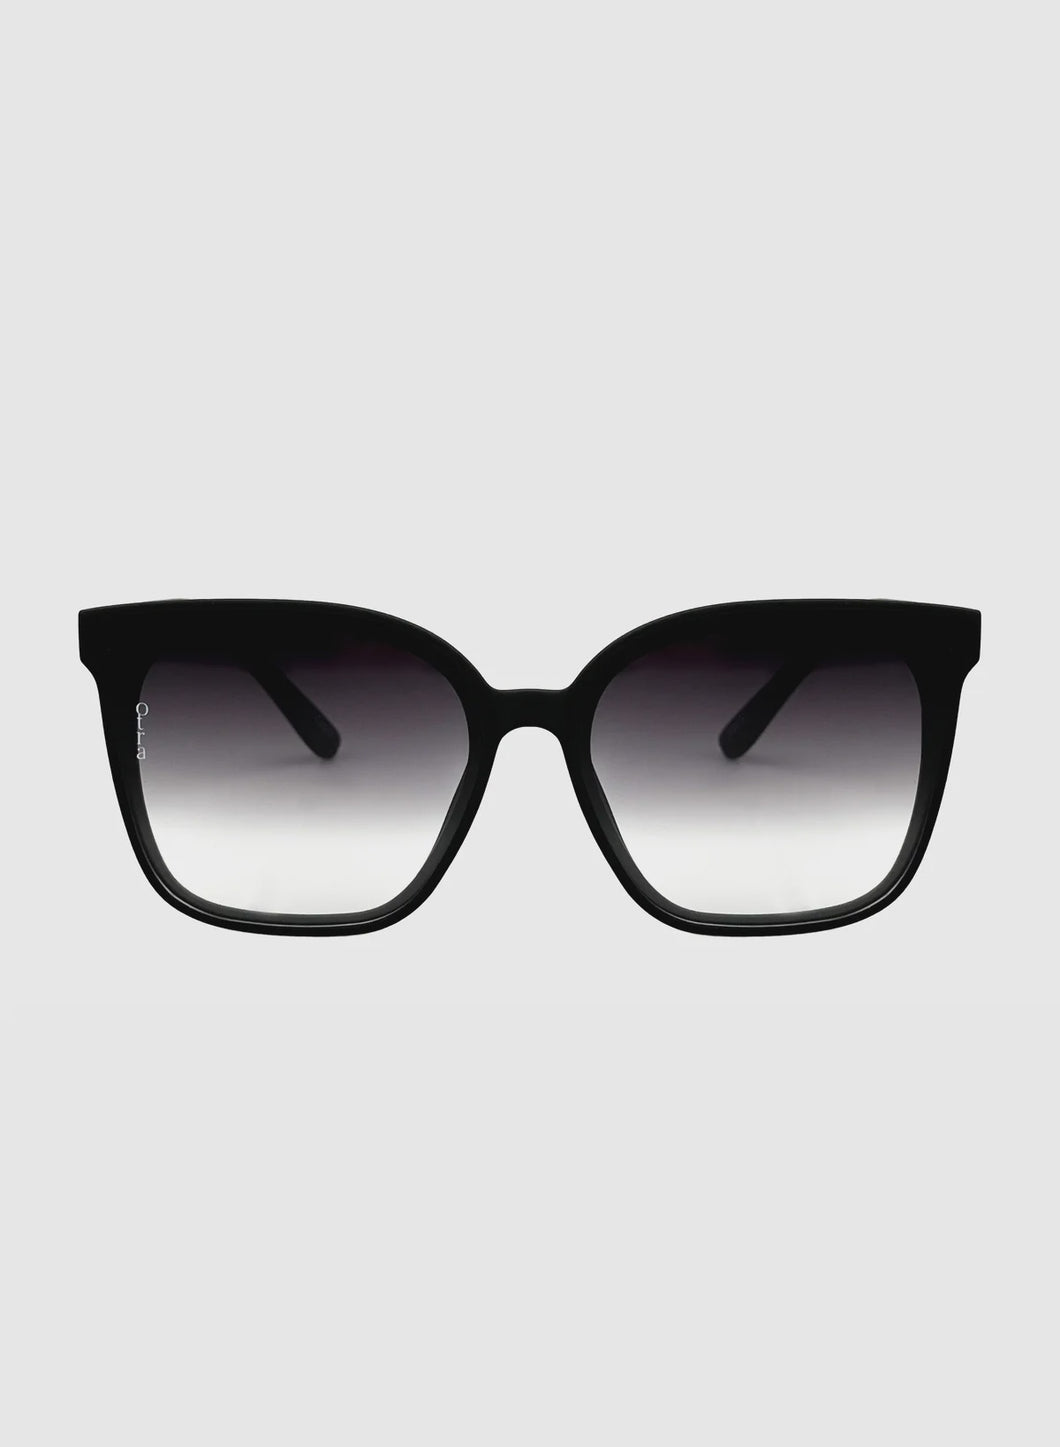 Otra Eyewear Sunglasses - Betty Black/Smoke